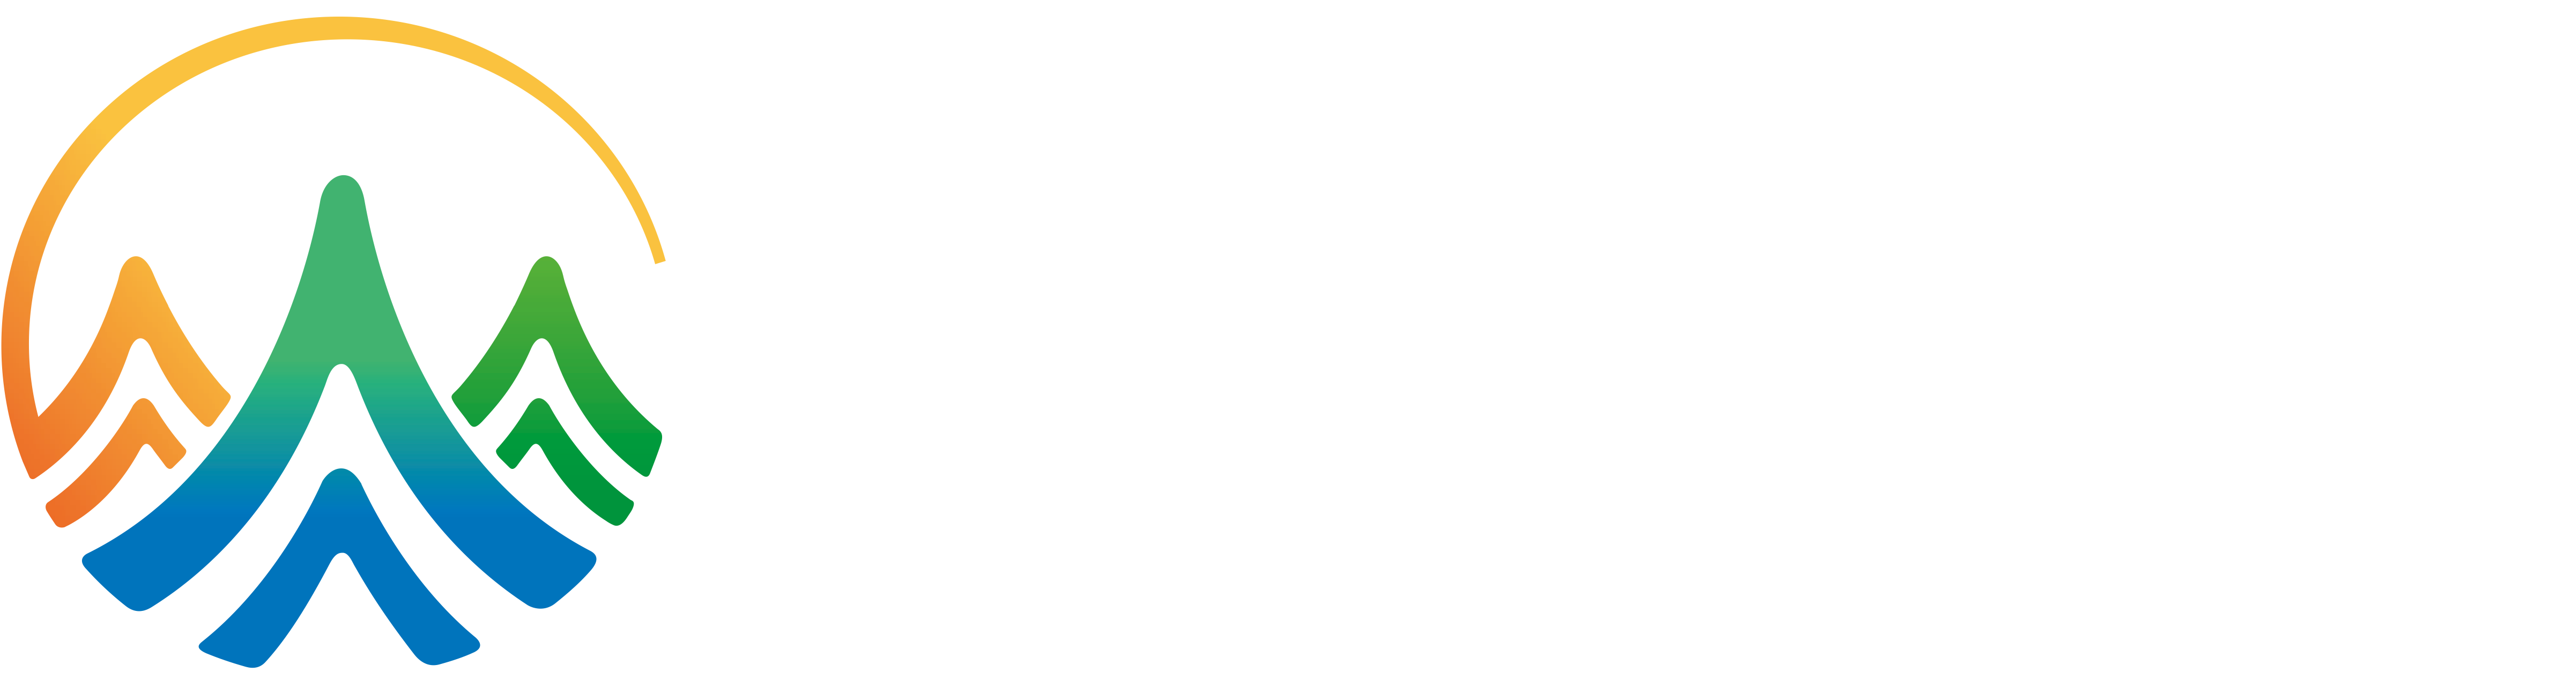 中国贵阳人力资源服务产业园贵安新区分园区